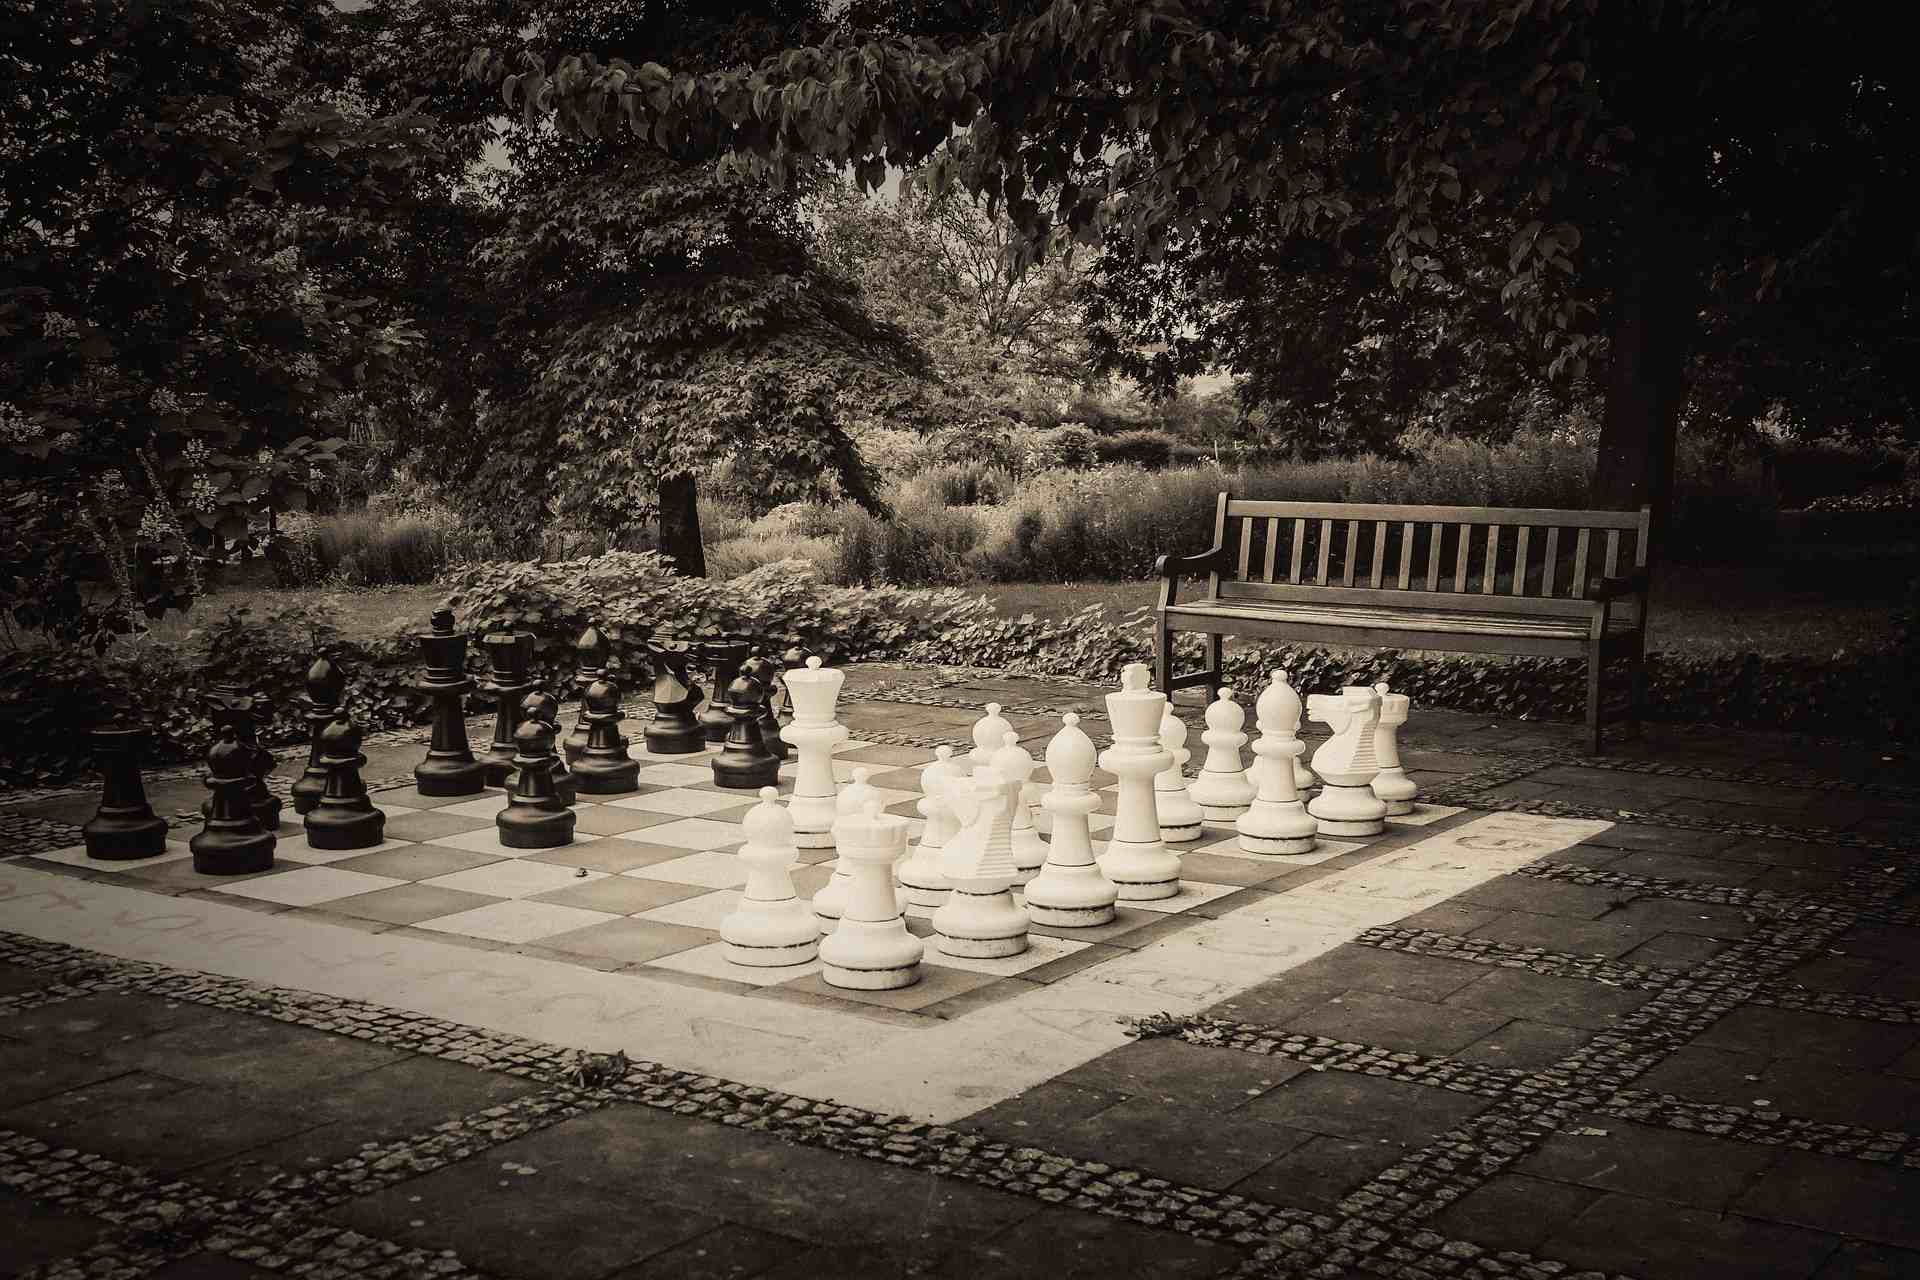 Ein Bild von einem S/W Schachbrett